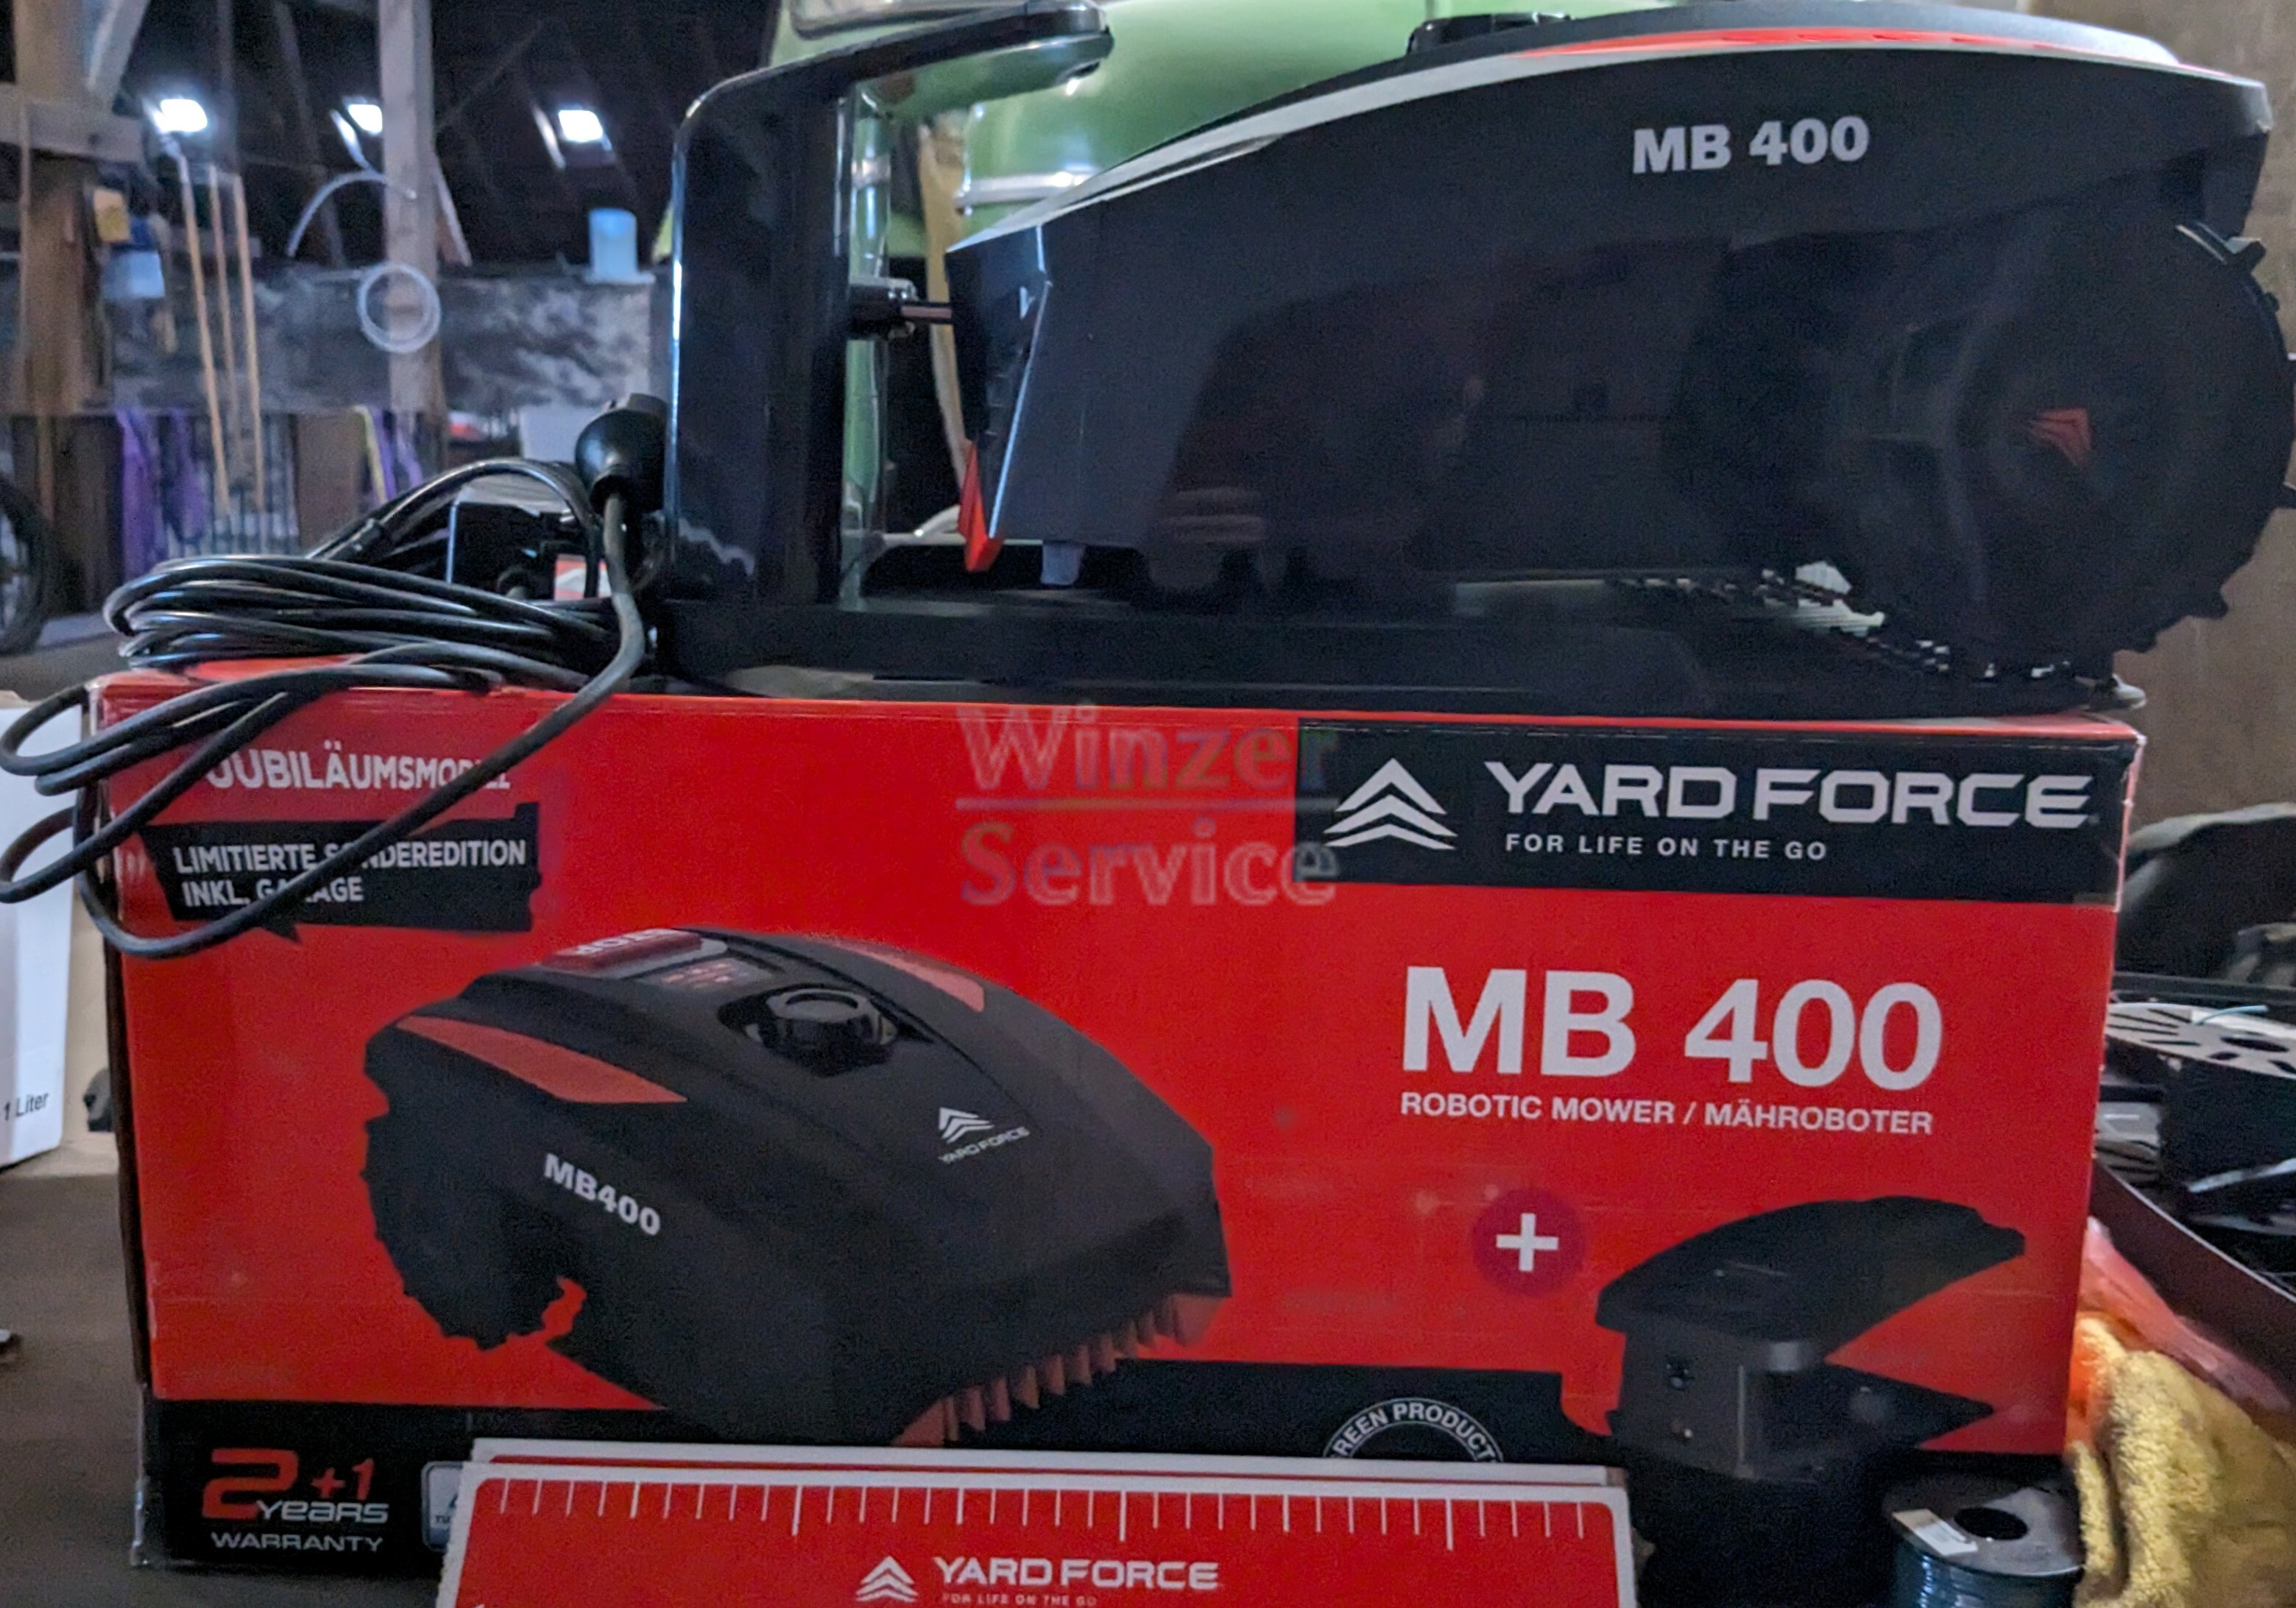 Yard Force MB400 Jubiläumsmodell Mähroboter